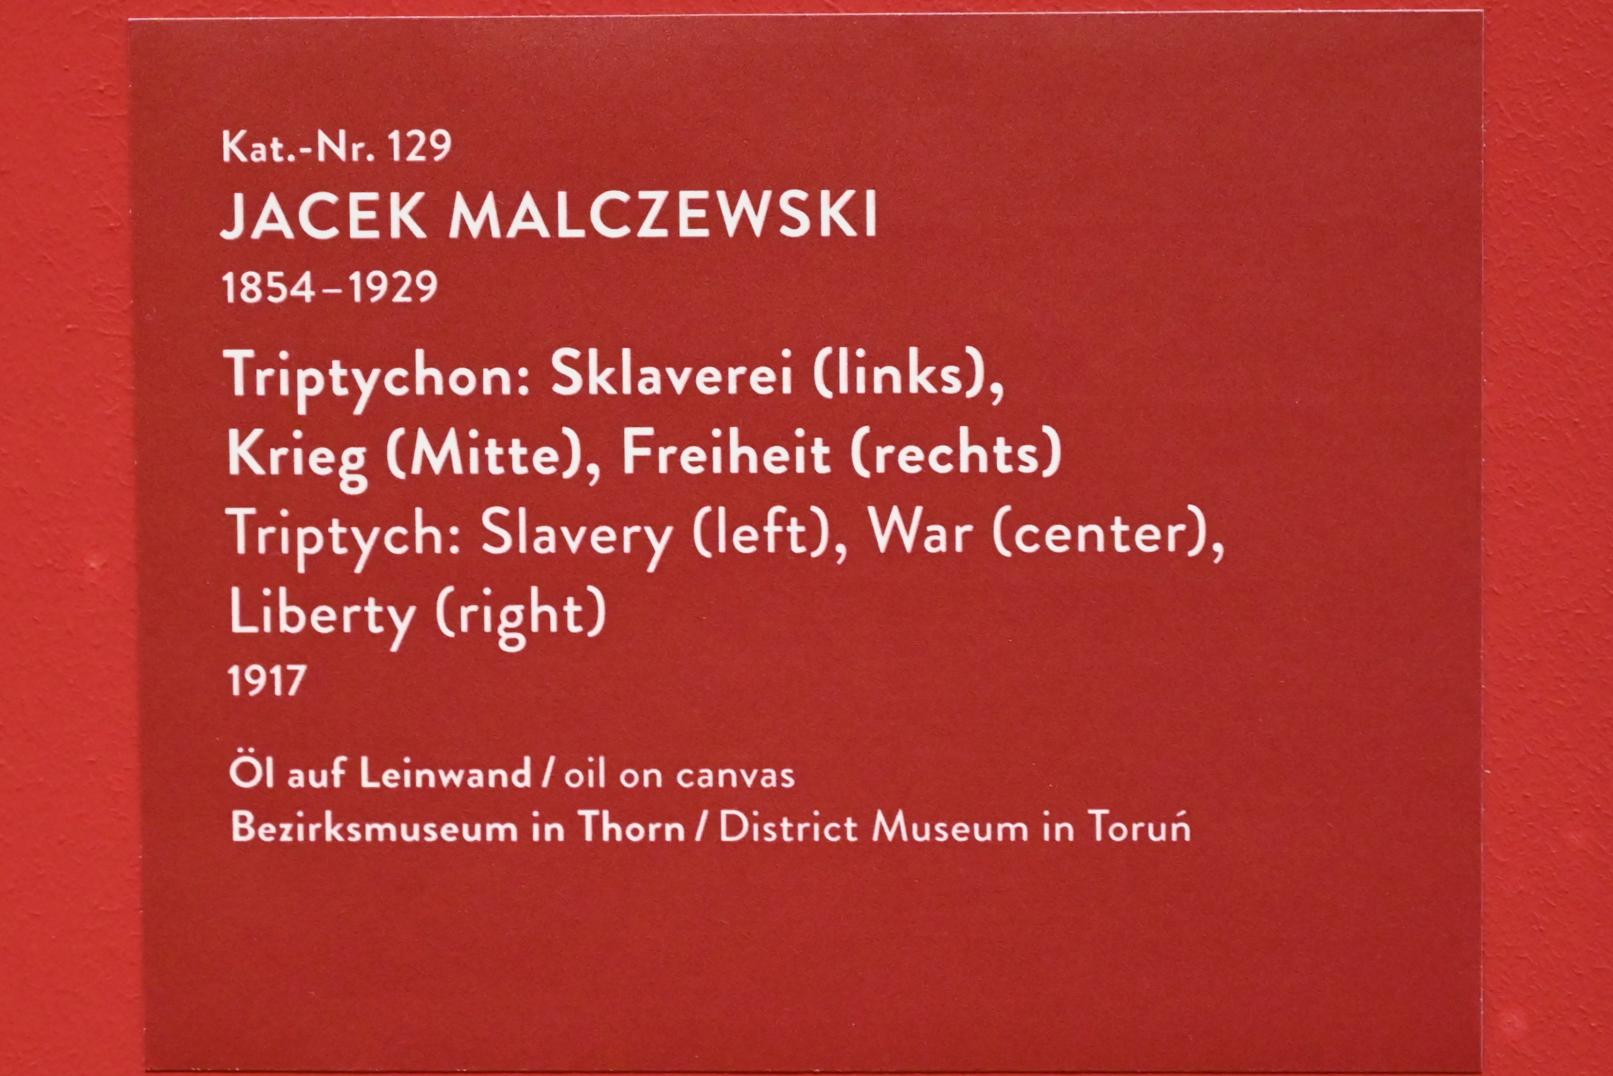 Jacek Malczewski (1876–1917), Triptychon: Sklaverei (links), Krieg (Mitte), Freiheit (rechts), München, Kunsthalle, Ausstellung "Polnischer Symbolismus um 1900" vom 25.03.-07.08.2022, Saal 11 - Polonia, 1917, Bild 2/2